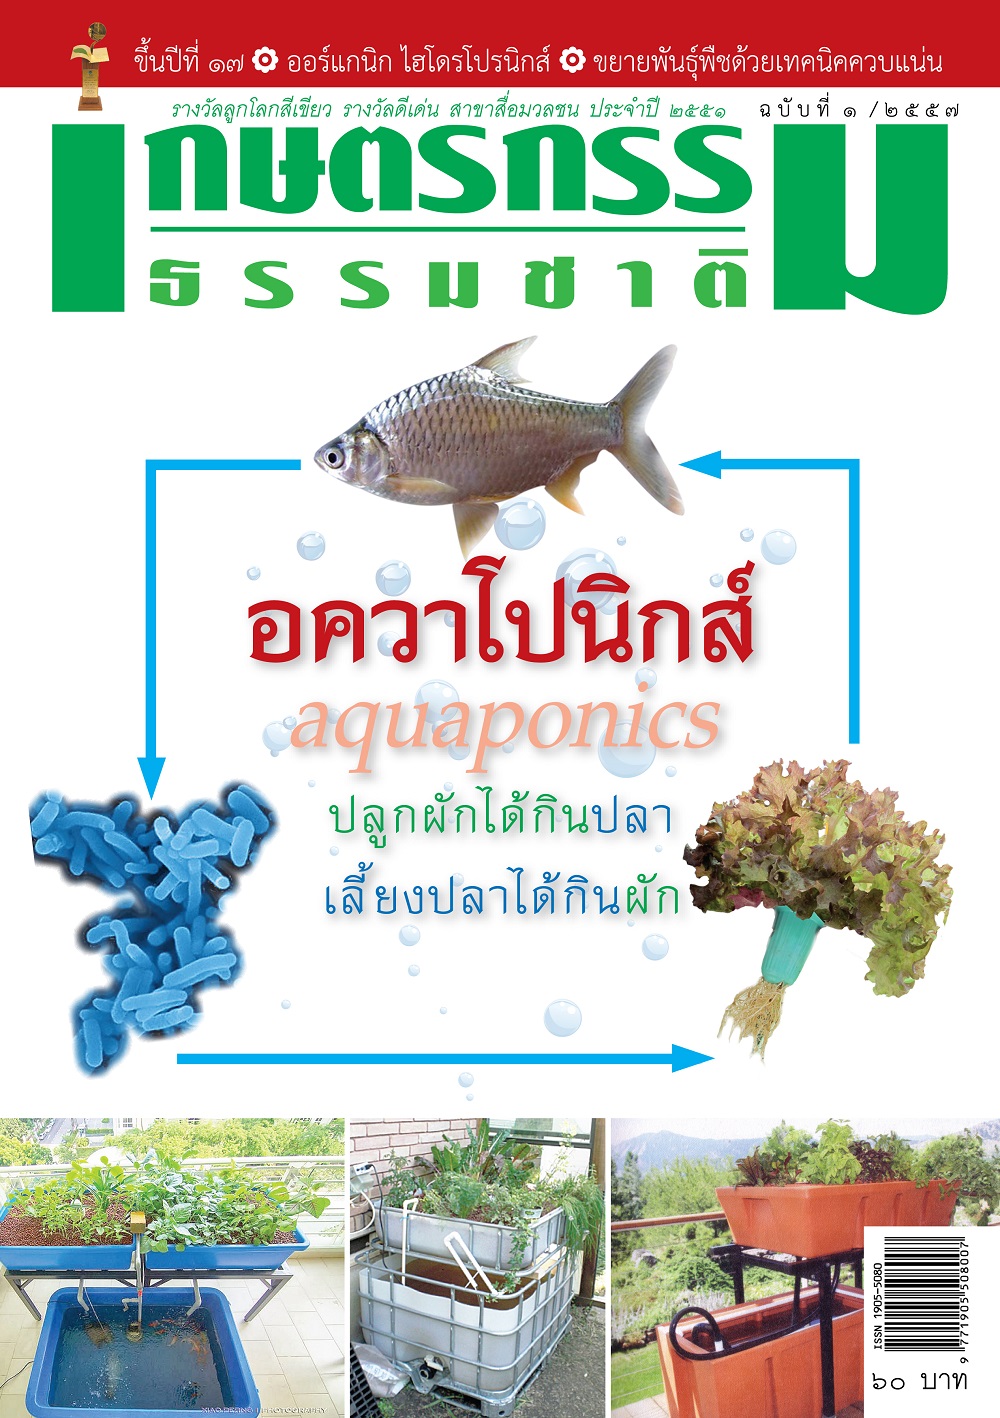 วารสารเกษตรกรรมธรรมชาติ ฉบับที่ 1/2557 อควาโปนิกส์ AQUAPONICS ปลูกผักได้กินปลา เลี้ยงปลาได้กินผัก